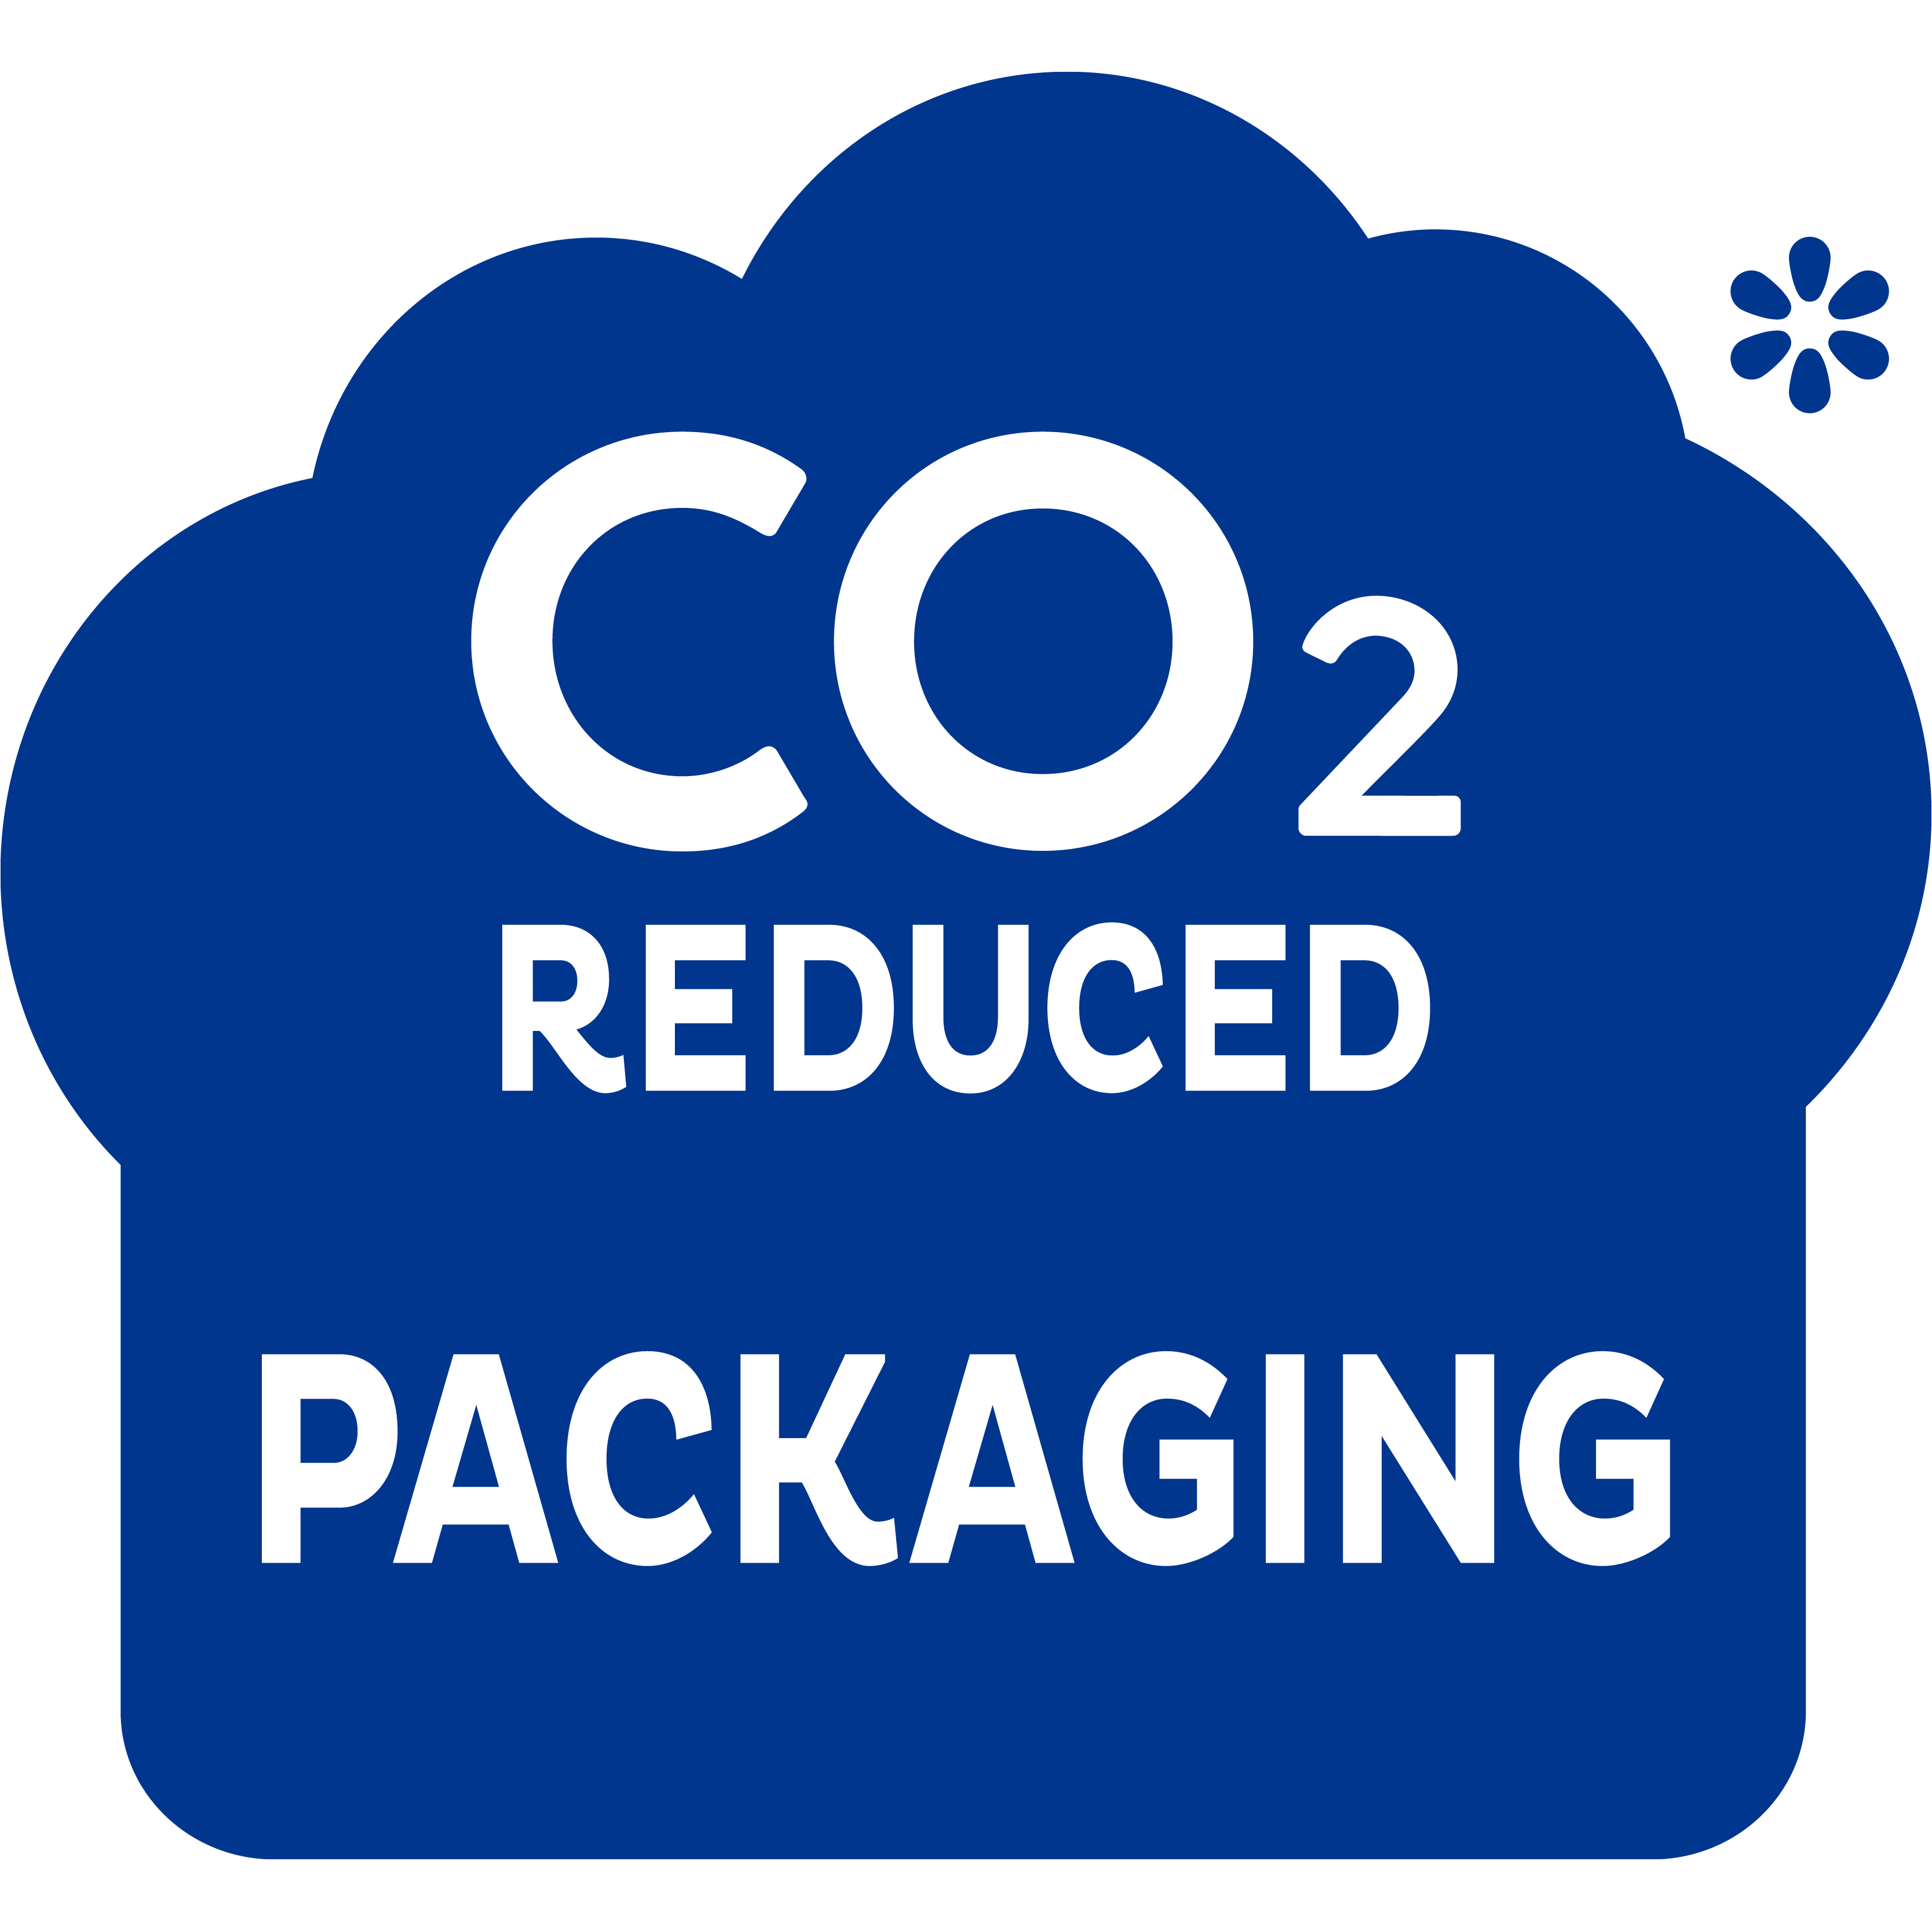 CO2-reduzierte Verpackung – für einen Schritt in die richtige Richtung